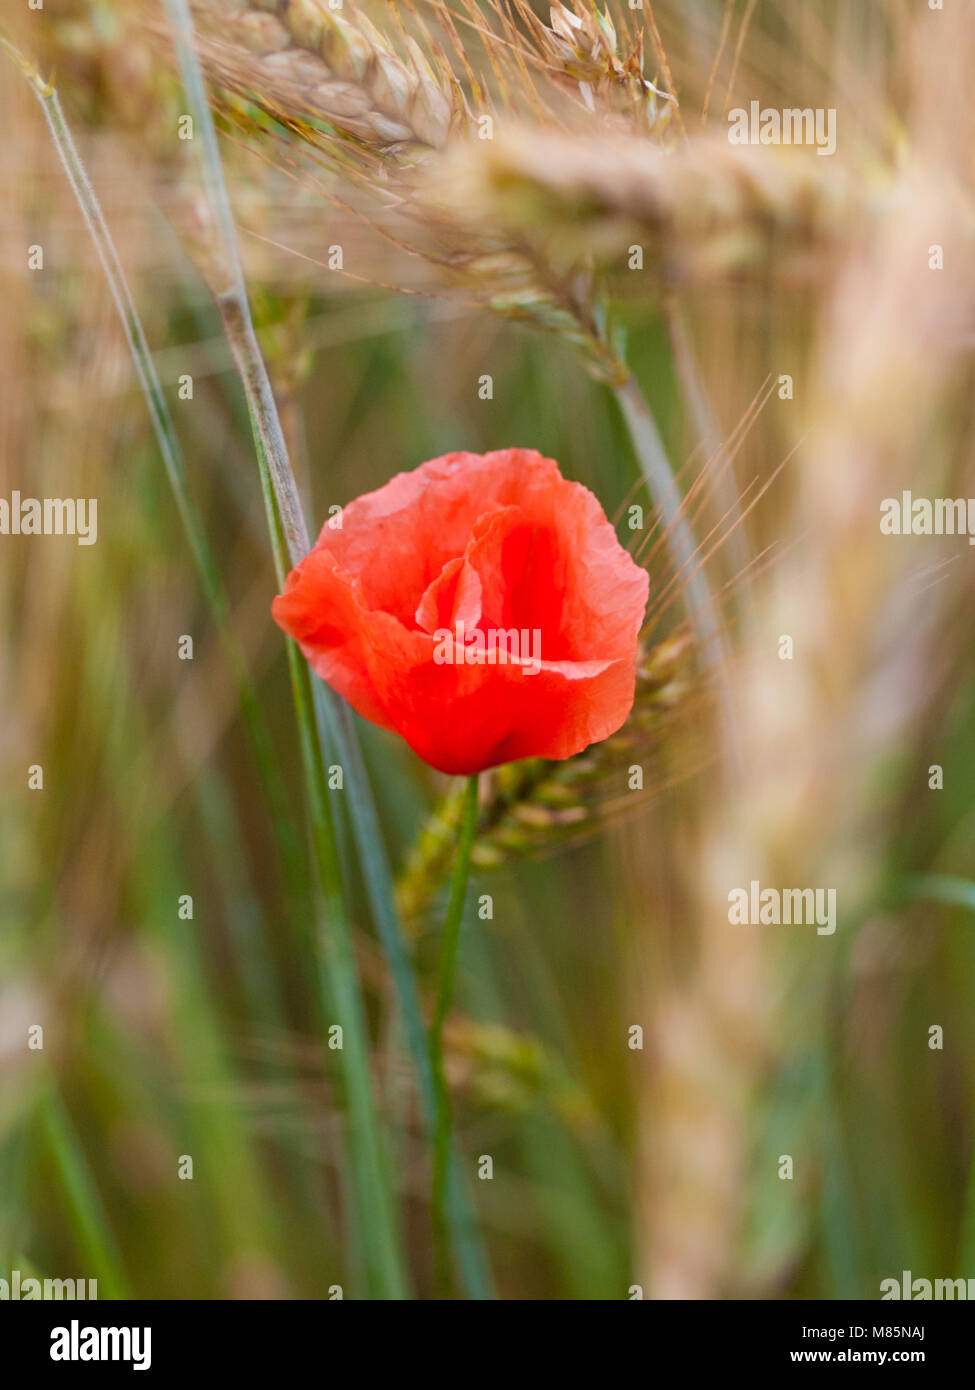 Campo de amapolas rojas en la primavera, campo de trigo fondo con mazorcas maduras Foto de stock